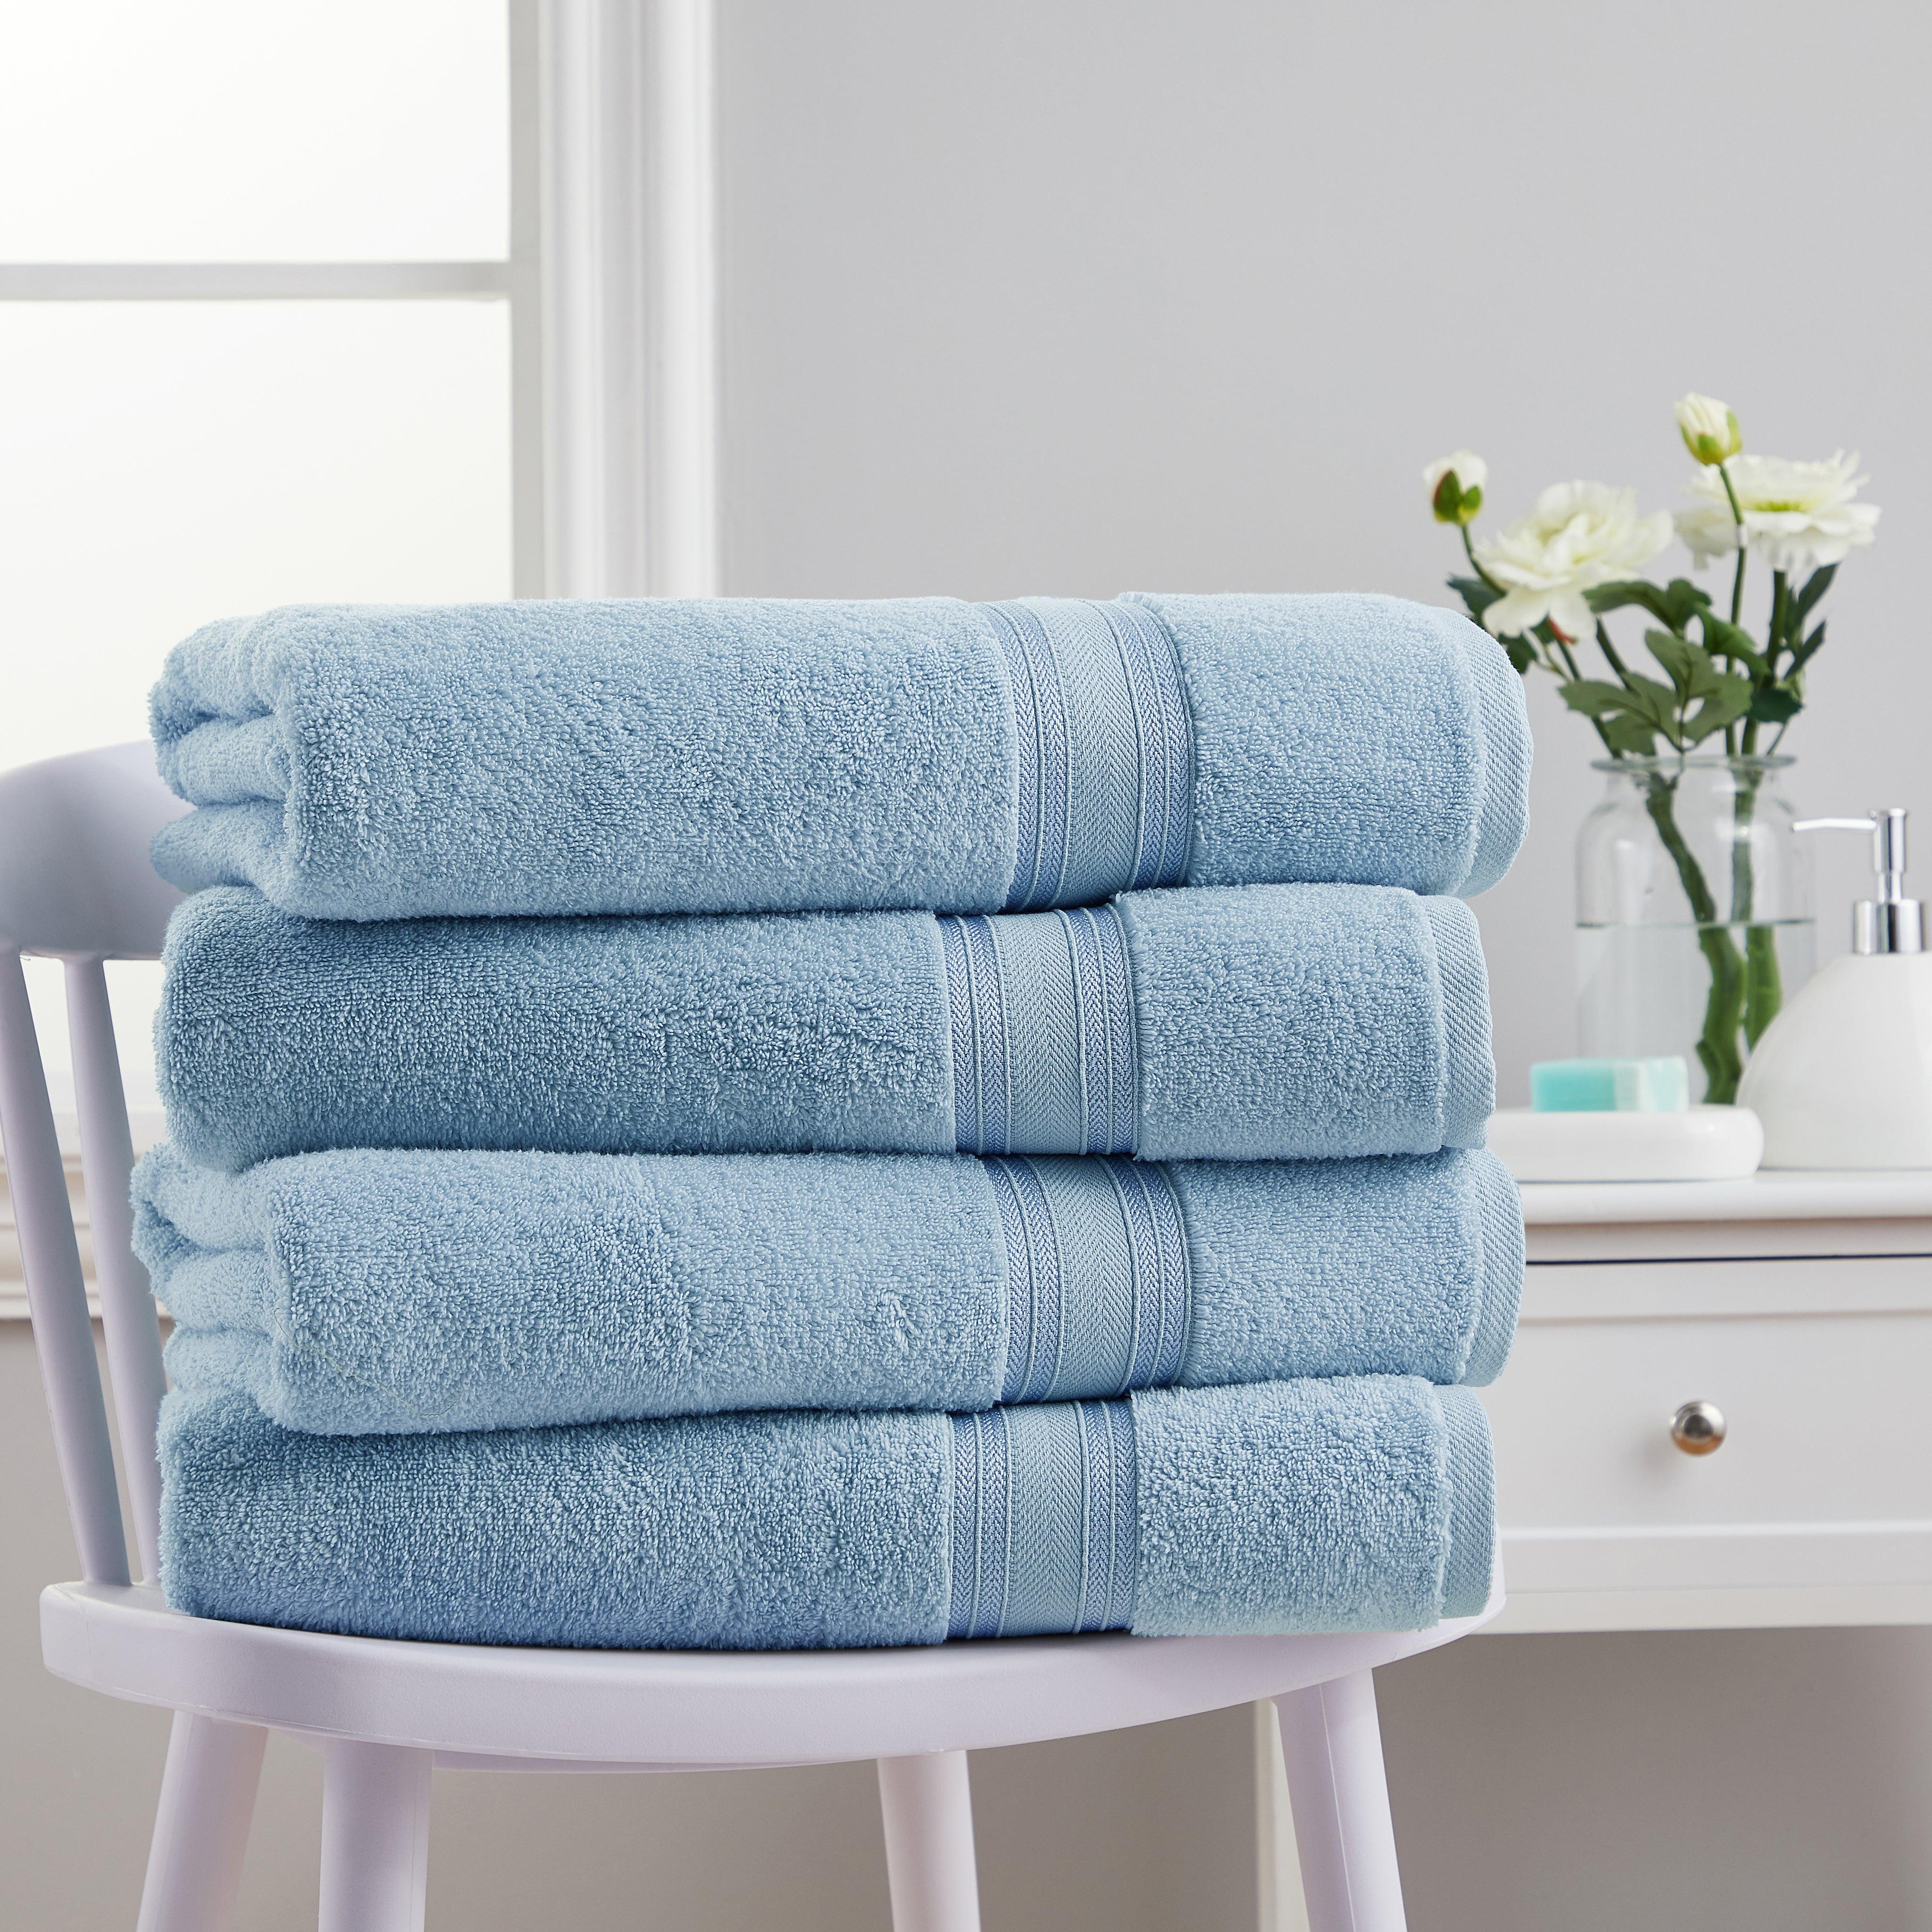 4 Piece Cotton Bath Towels Set | Spirit Linen -  Baby Blue